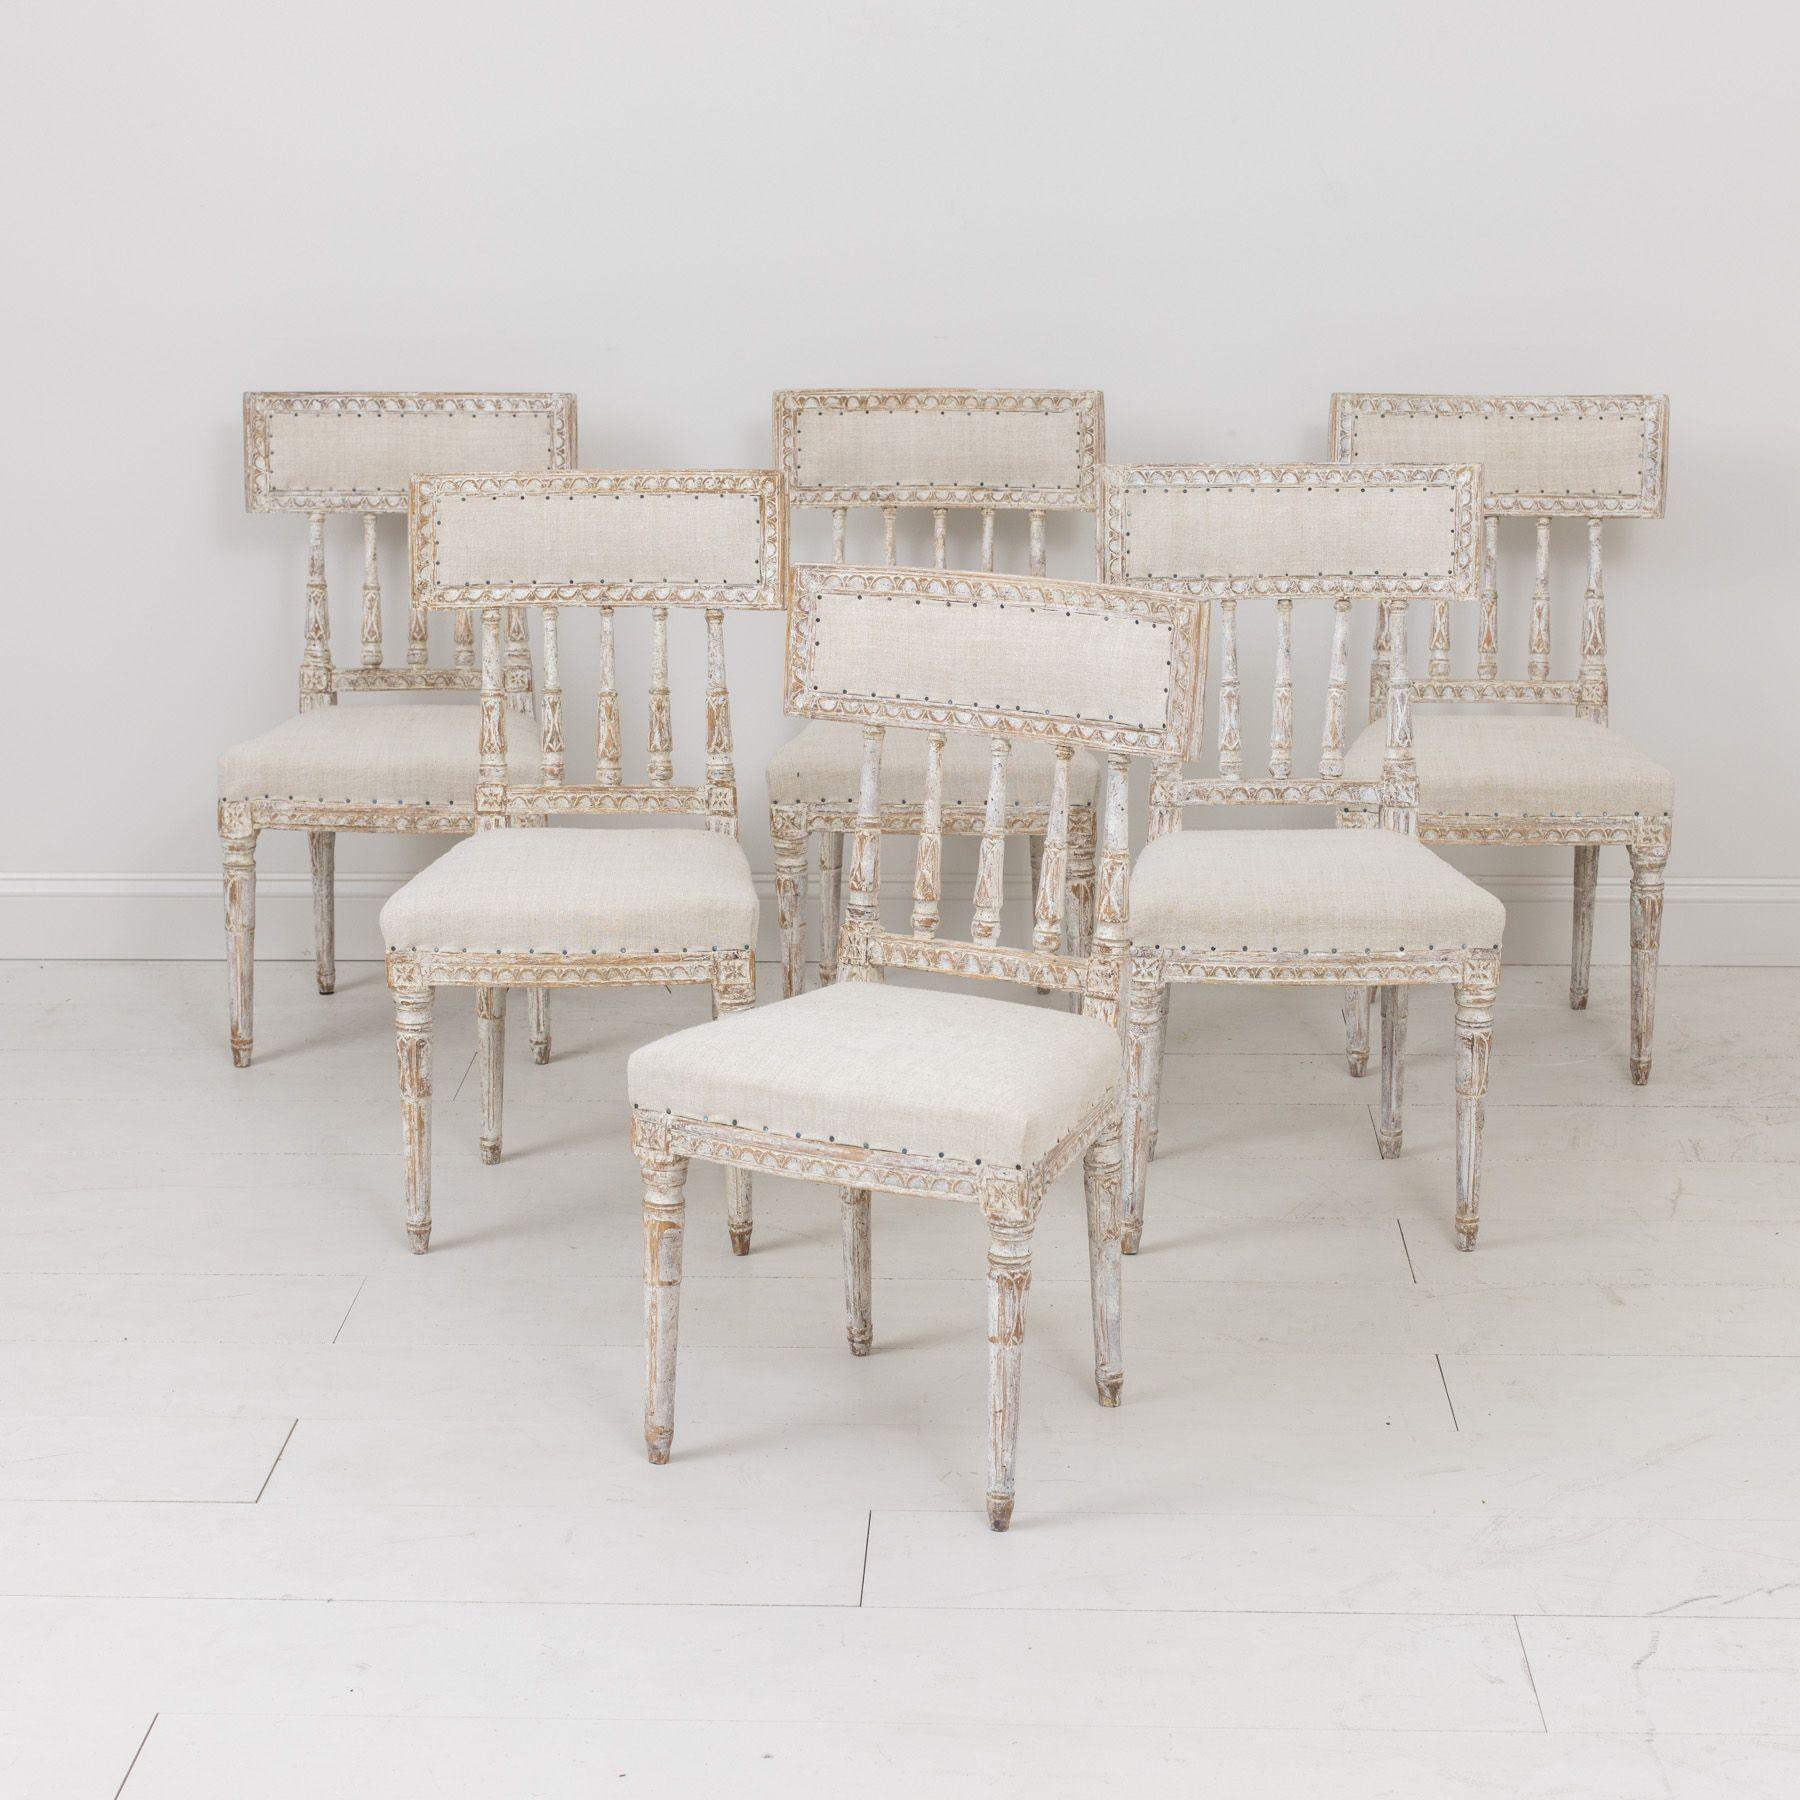 Un ensemble de six chaises suédoises de la période gustavienne en peinture ivoire / taupe / grise d'origine, nouvellement tapissées de lin antique. Ces magnifiques chaises sont dotées d'un dossier incurvé, inspiré des anciens modèles romains